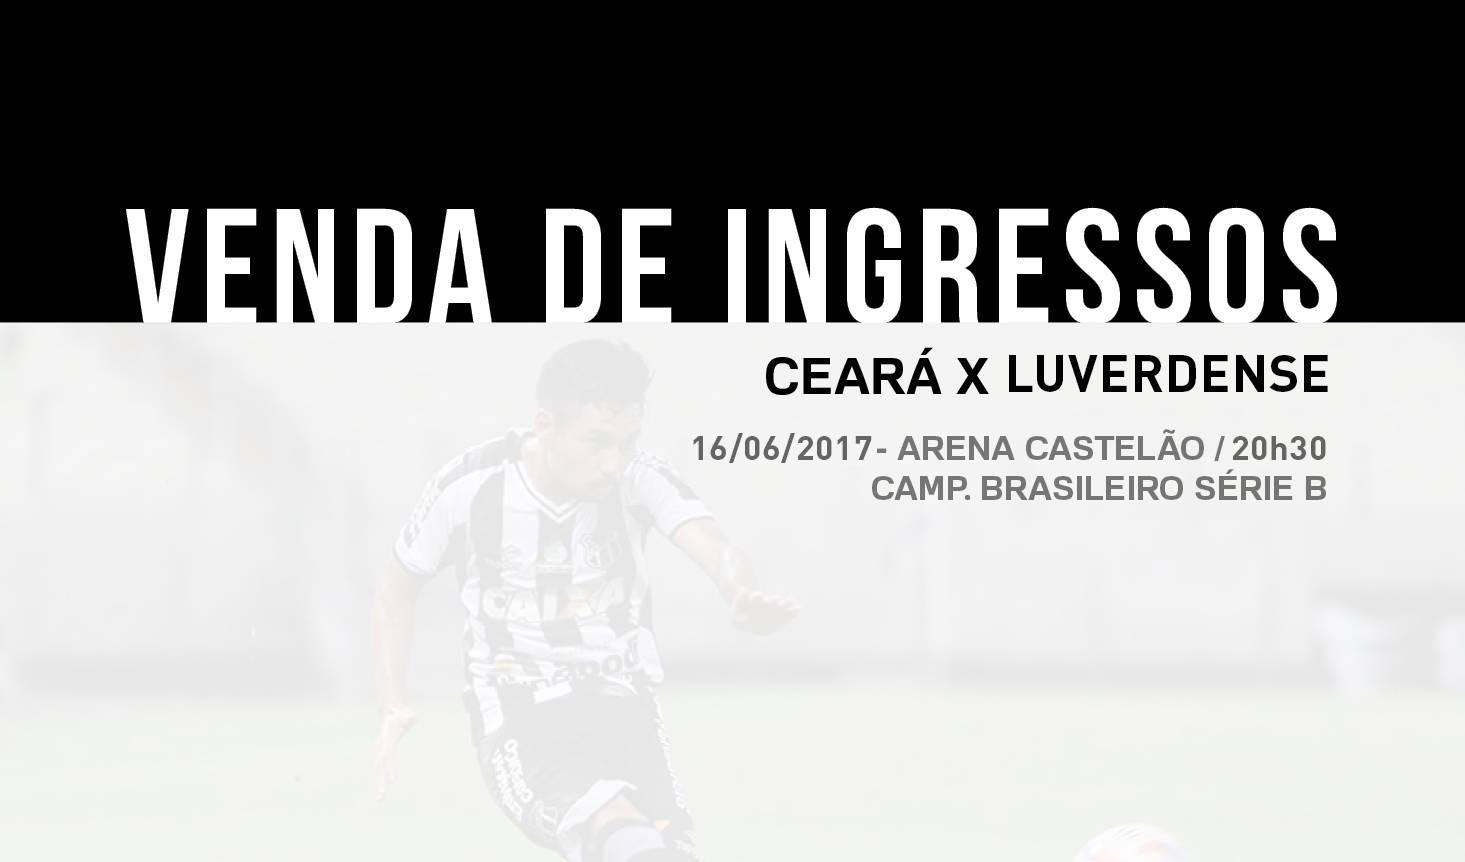 Venda de ingressos para Ceará e Luverdense começa nessa quarta-feira